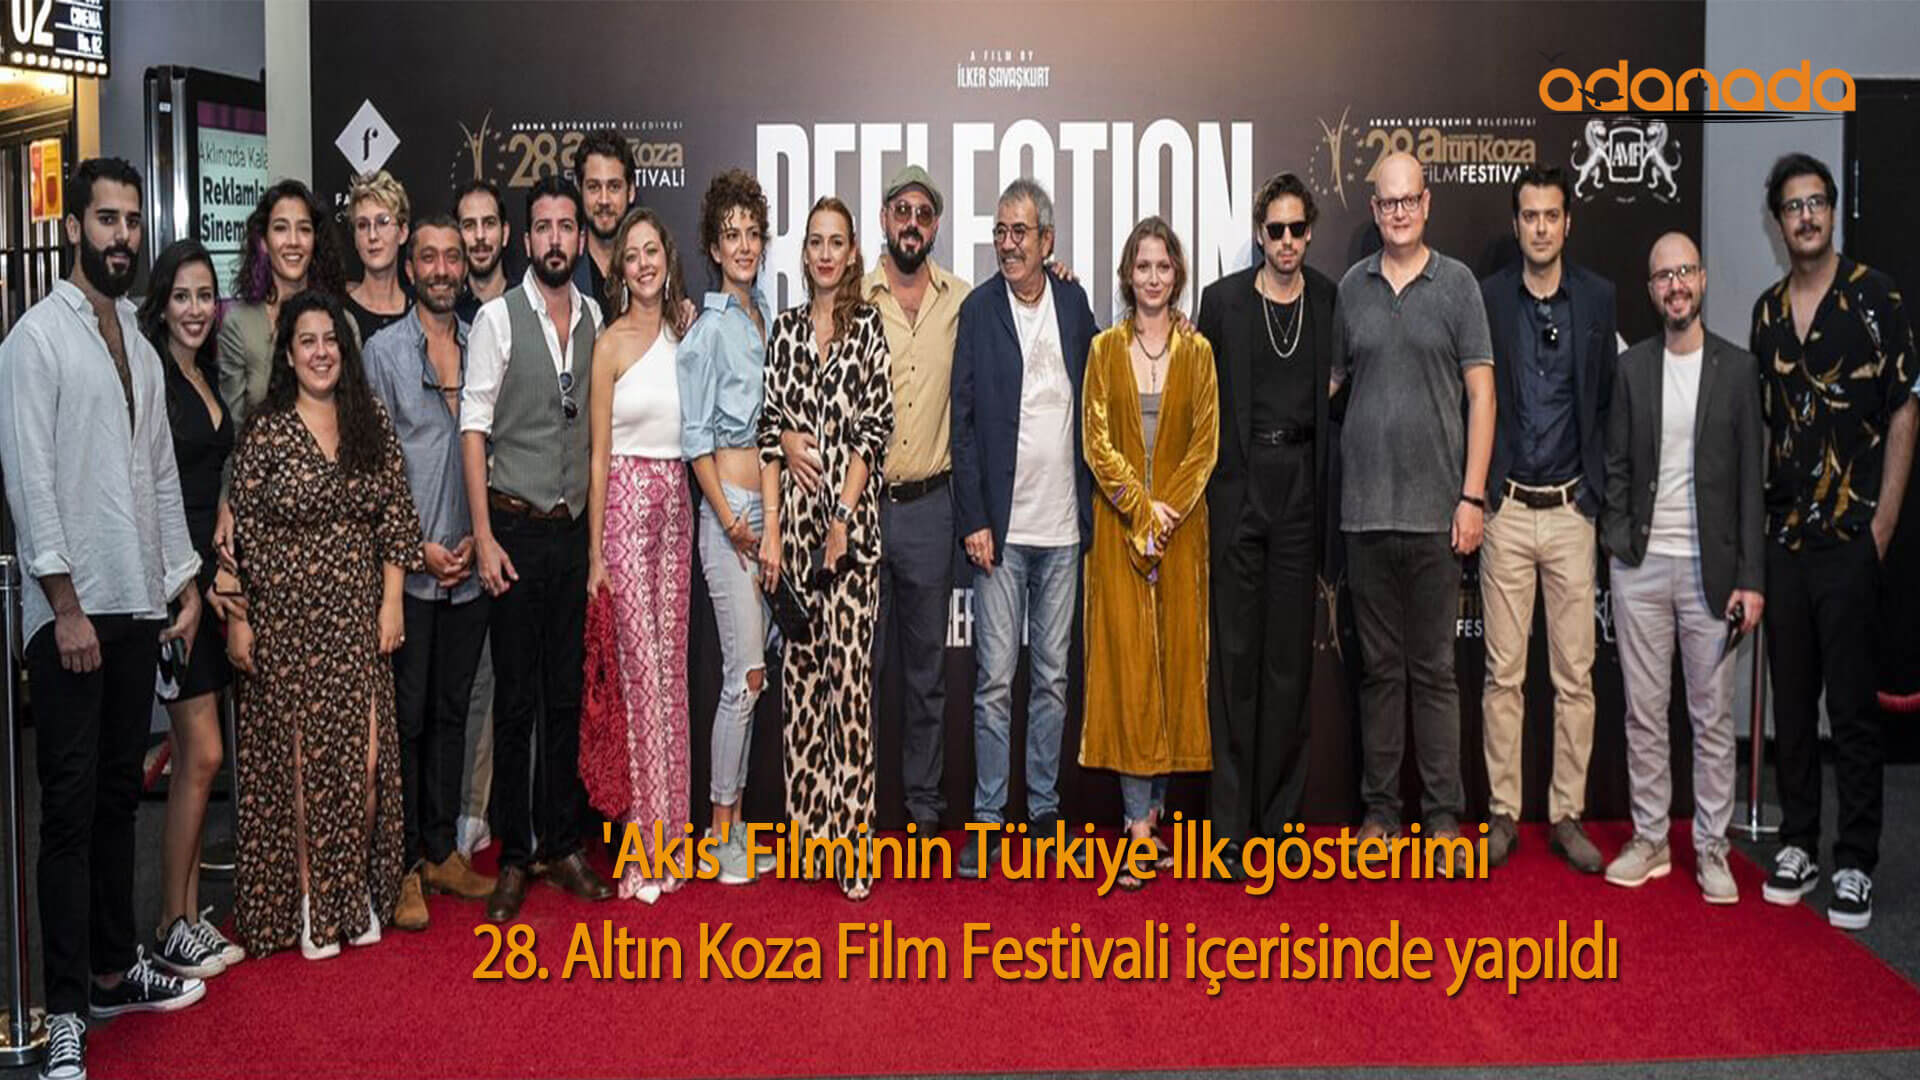 ‘Akis’ Filminin Türkiye İlk gösterimi, 28. Altın Koza Film Festivali içerisinde yapıldı